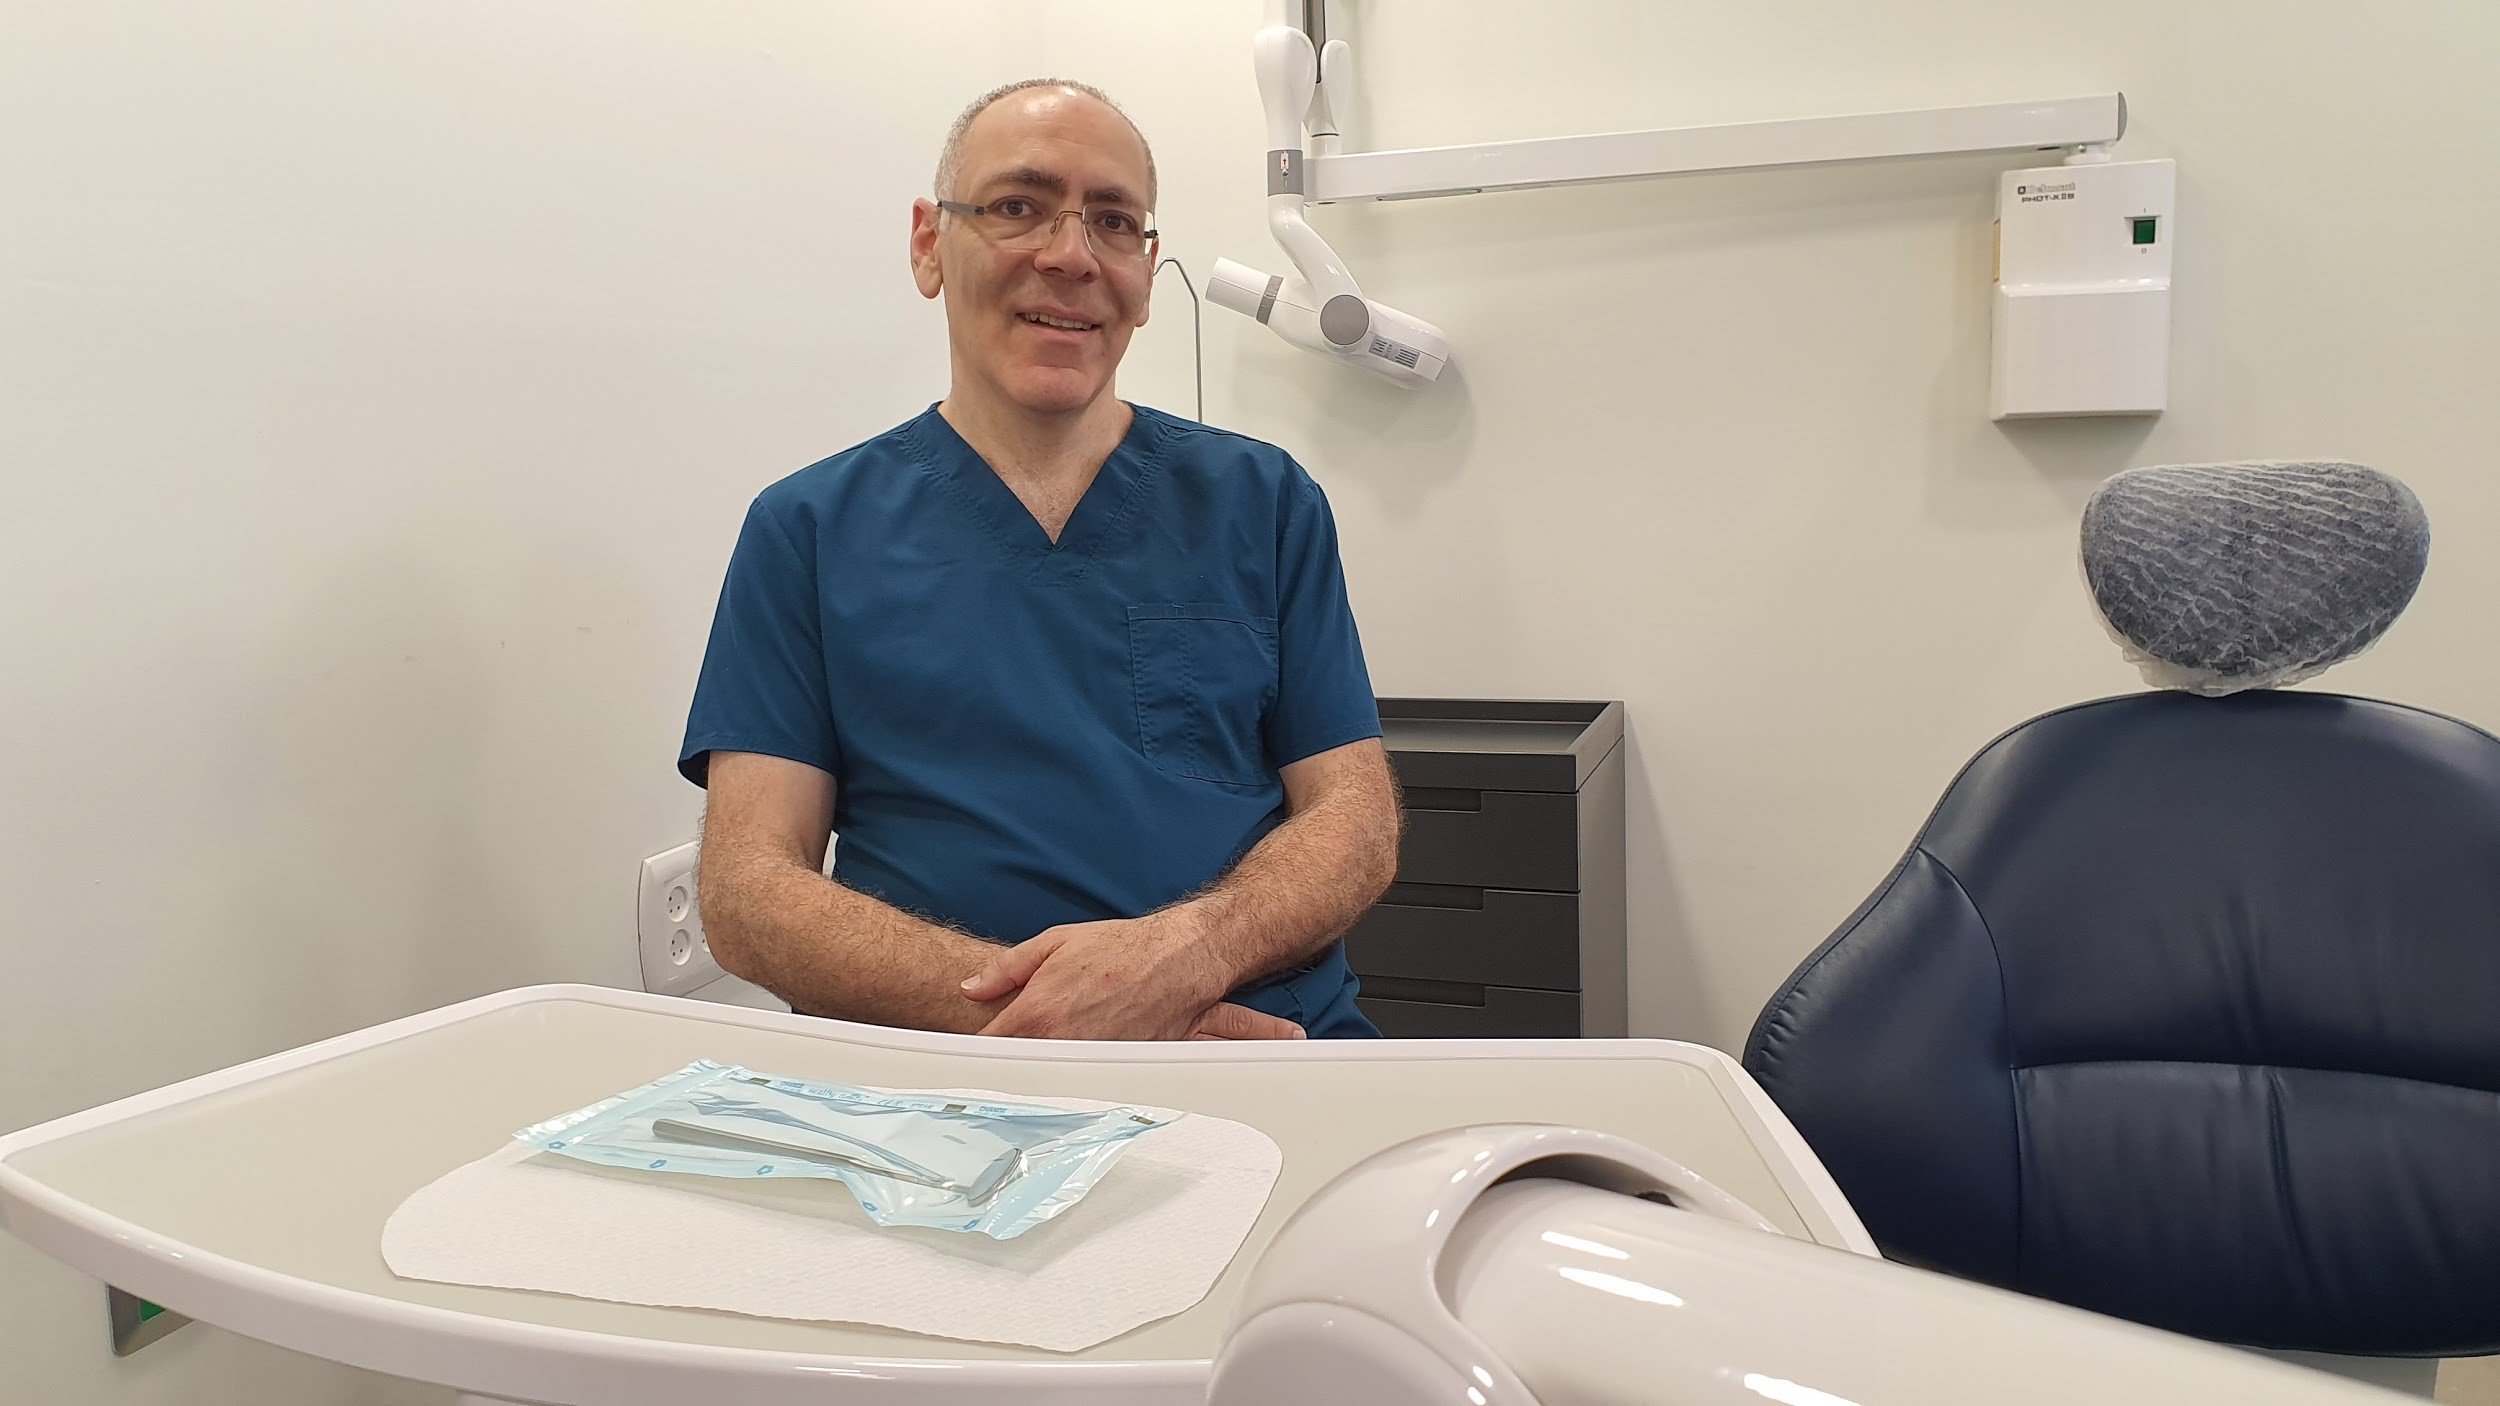 חיוך של מיליון דולר – ד"ר שי דורי מסביר על הלבנת שיניים